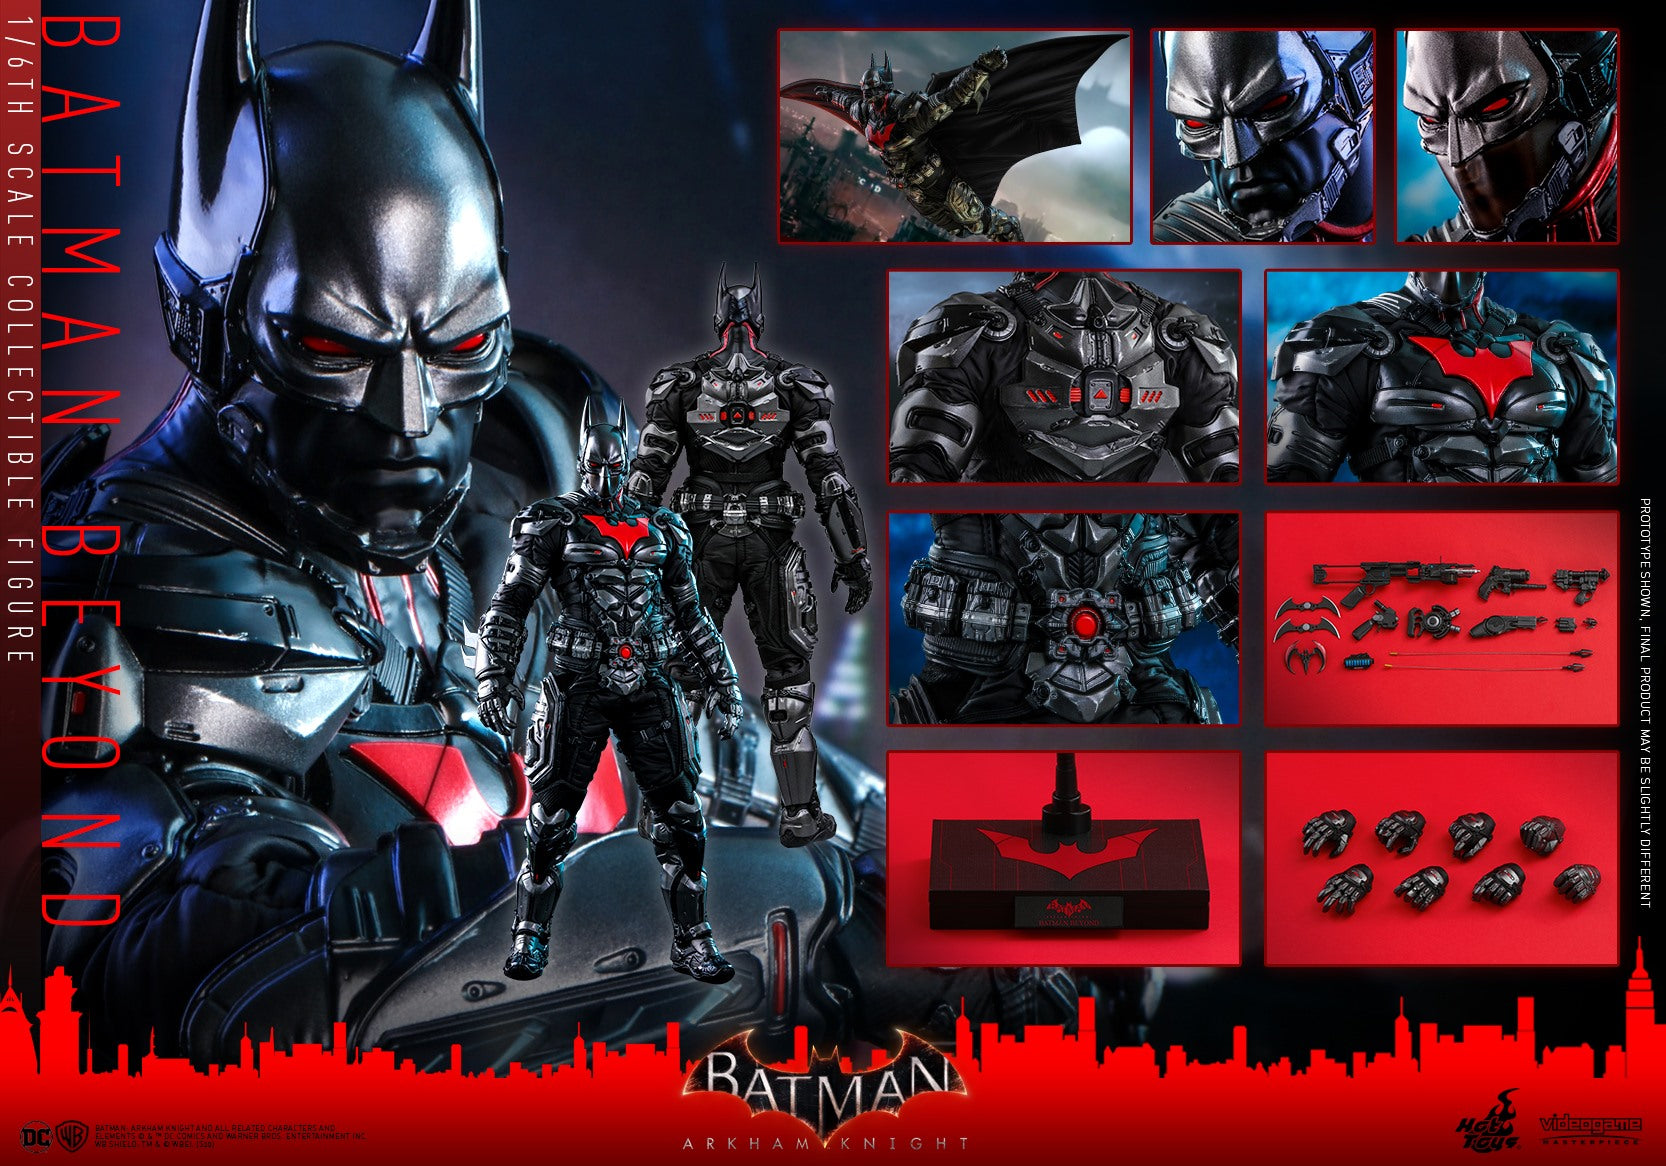 Hot Toys - VGM39 - Batman: Arkham Knight - Batman Beyond - Marvelous Toys